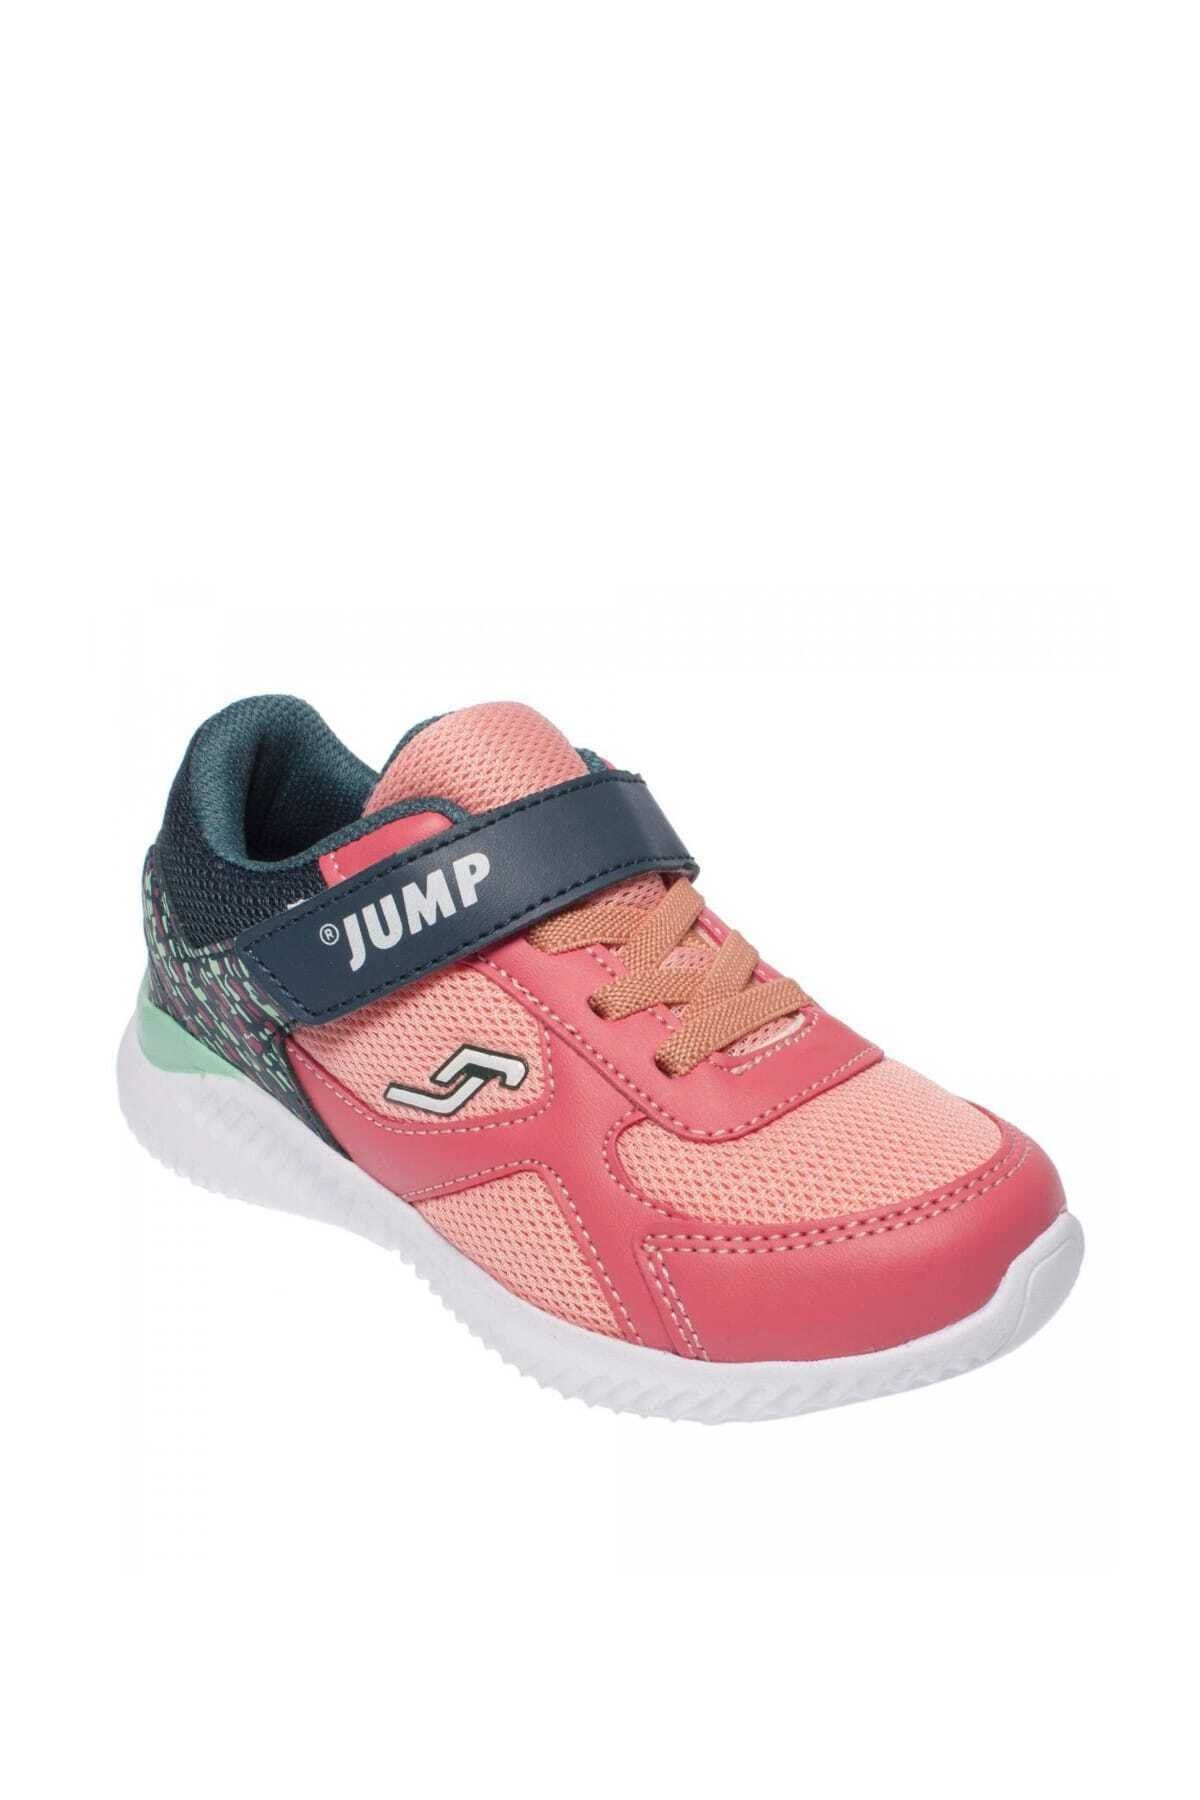 Jump 21258 Çocuk Spor Ayakkabı